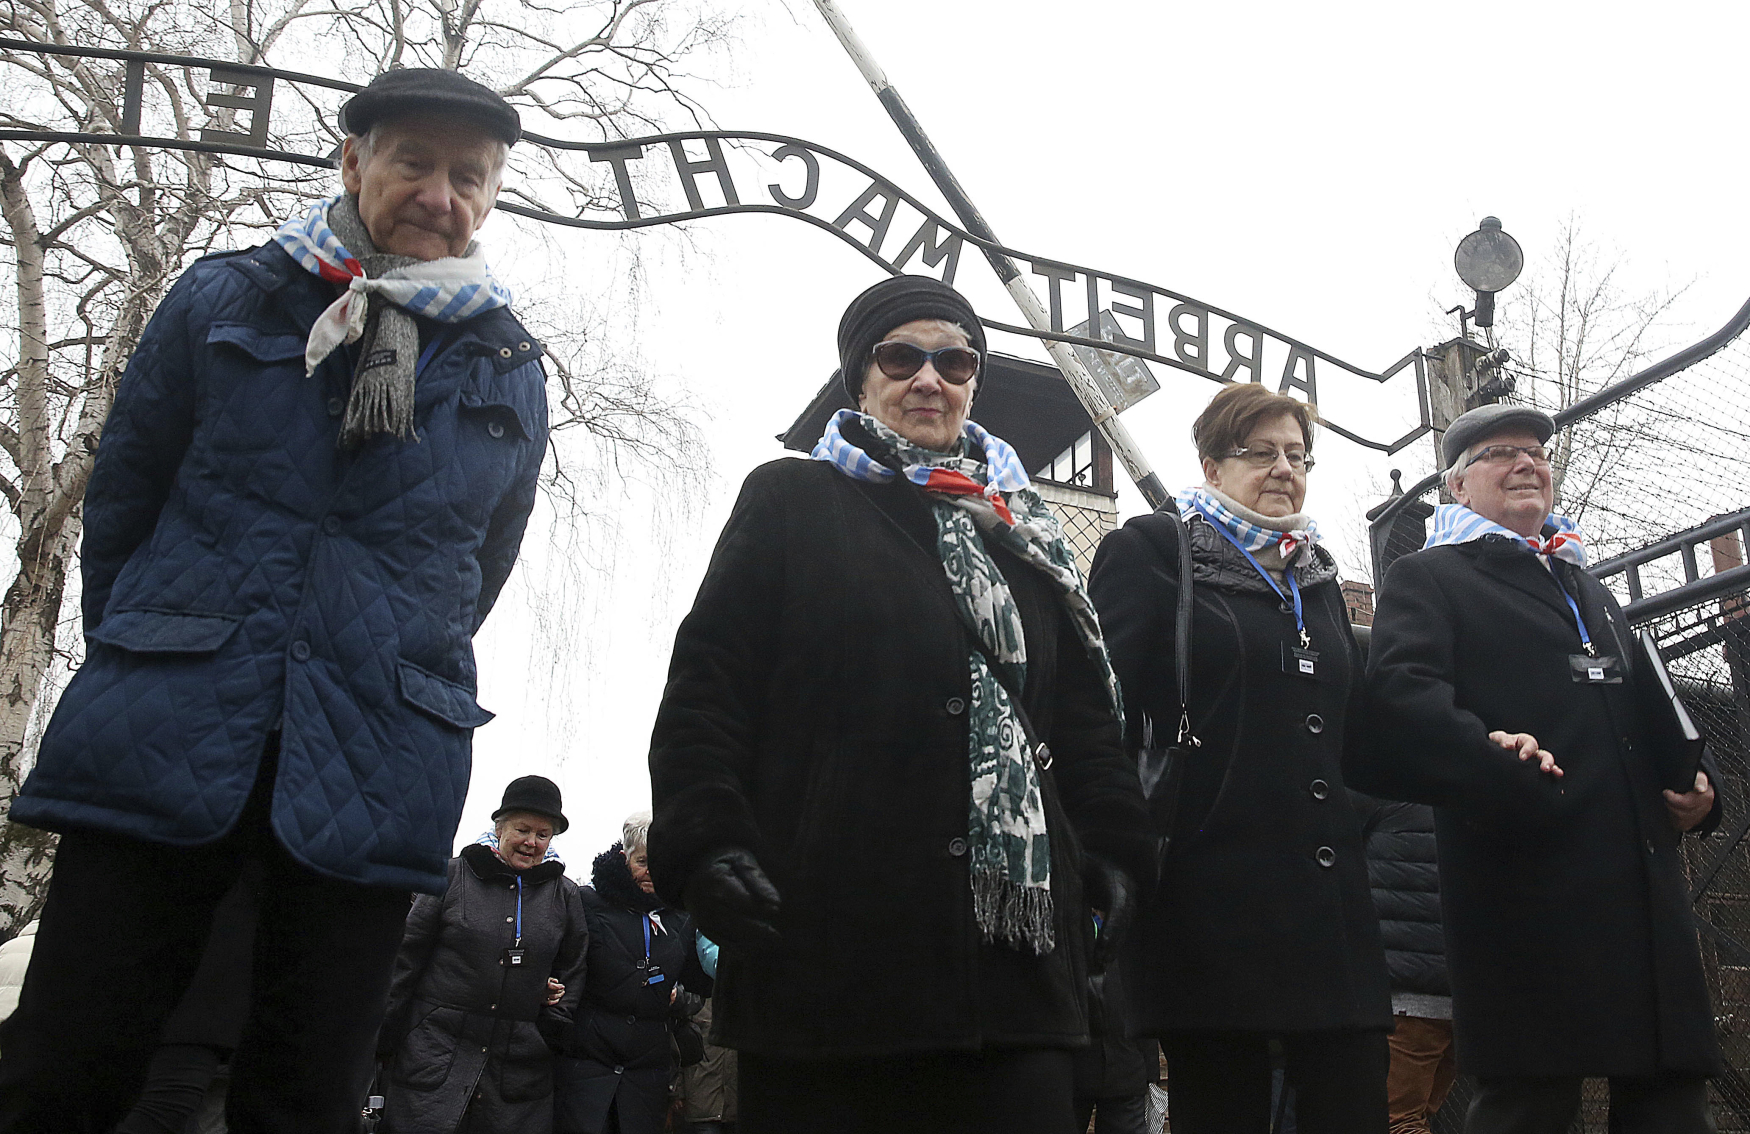 V Polsku přijali zákon, podle kterého je trestné říkat, že i někteří Poláci se podíleli na holocaustu